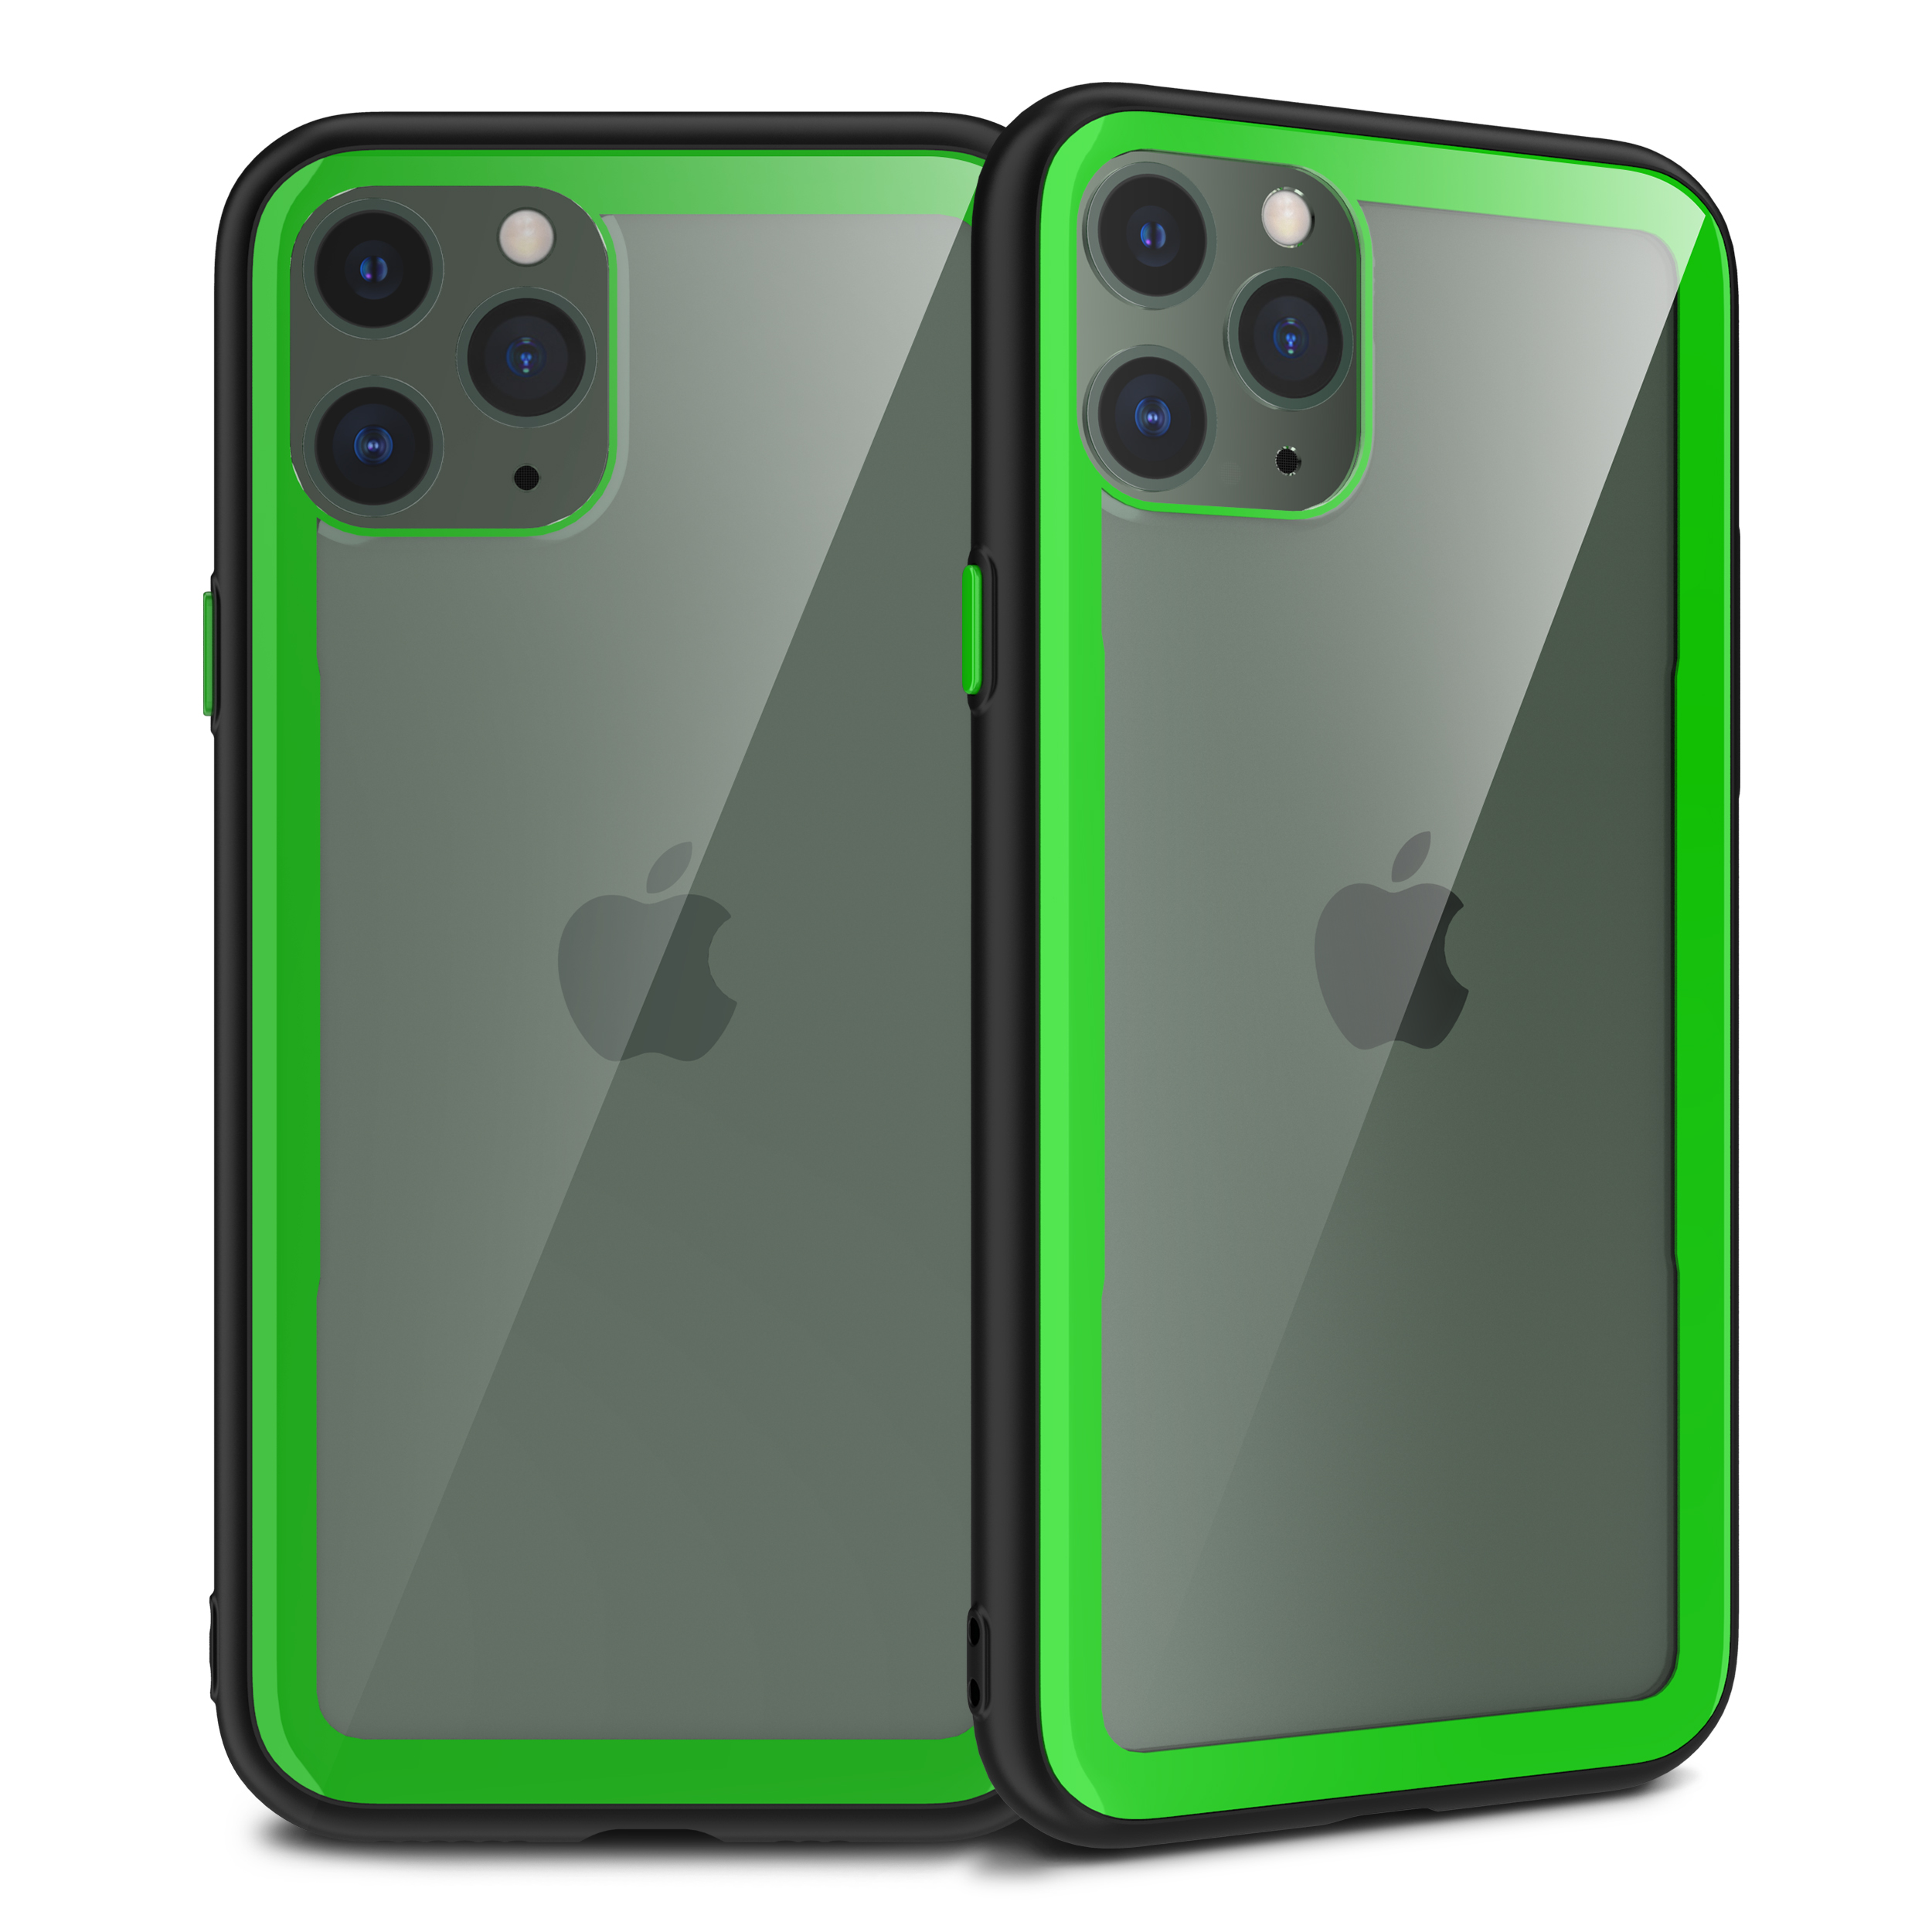 iPHONE 11 Pro Max (6.5in) Clear Slim Matte Hybrid Bumper Case (Black Green)